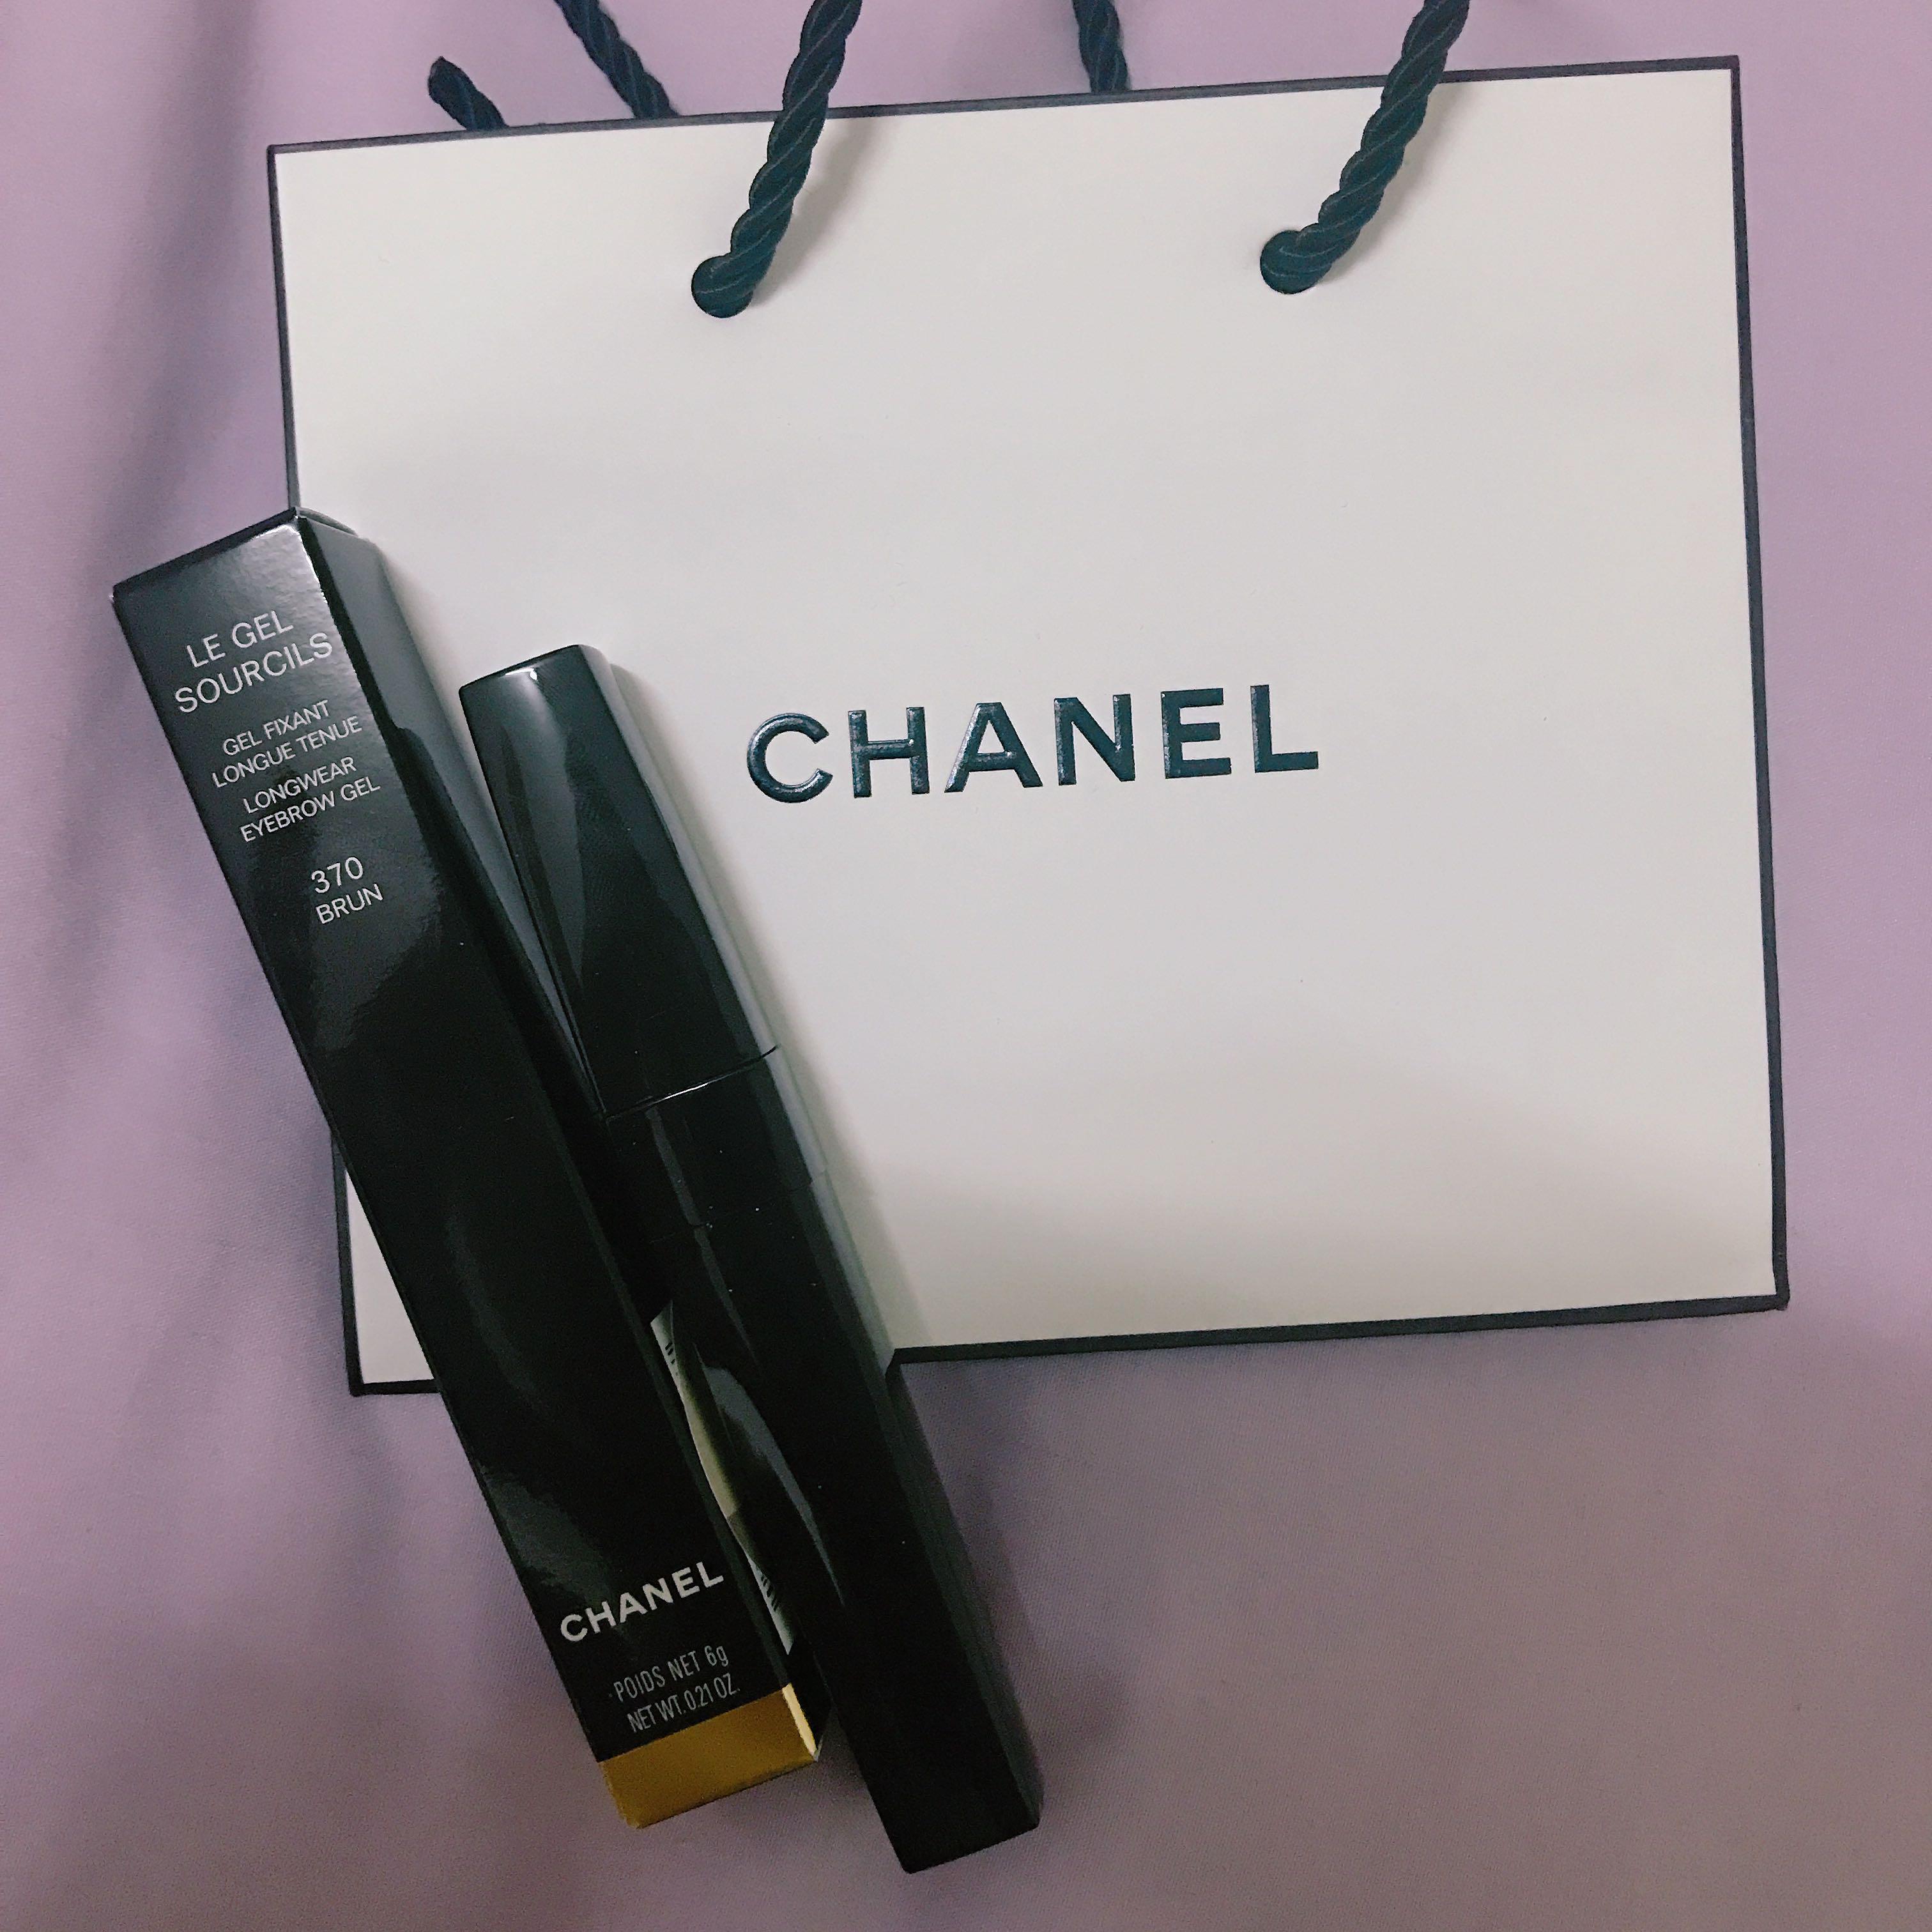 Chanel Le Gel Sourcils - Longwear Eyebrow Gel | 360 Blond